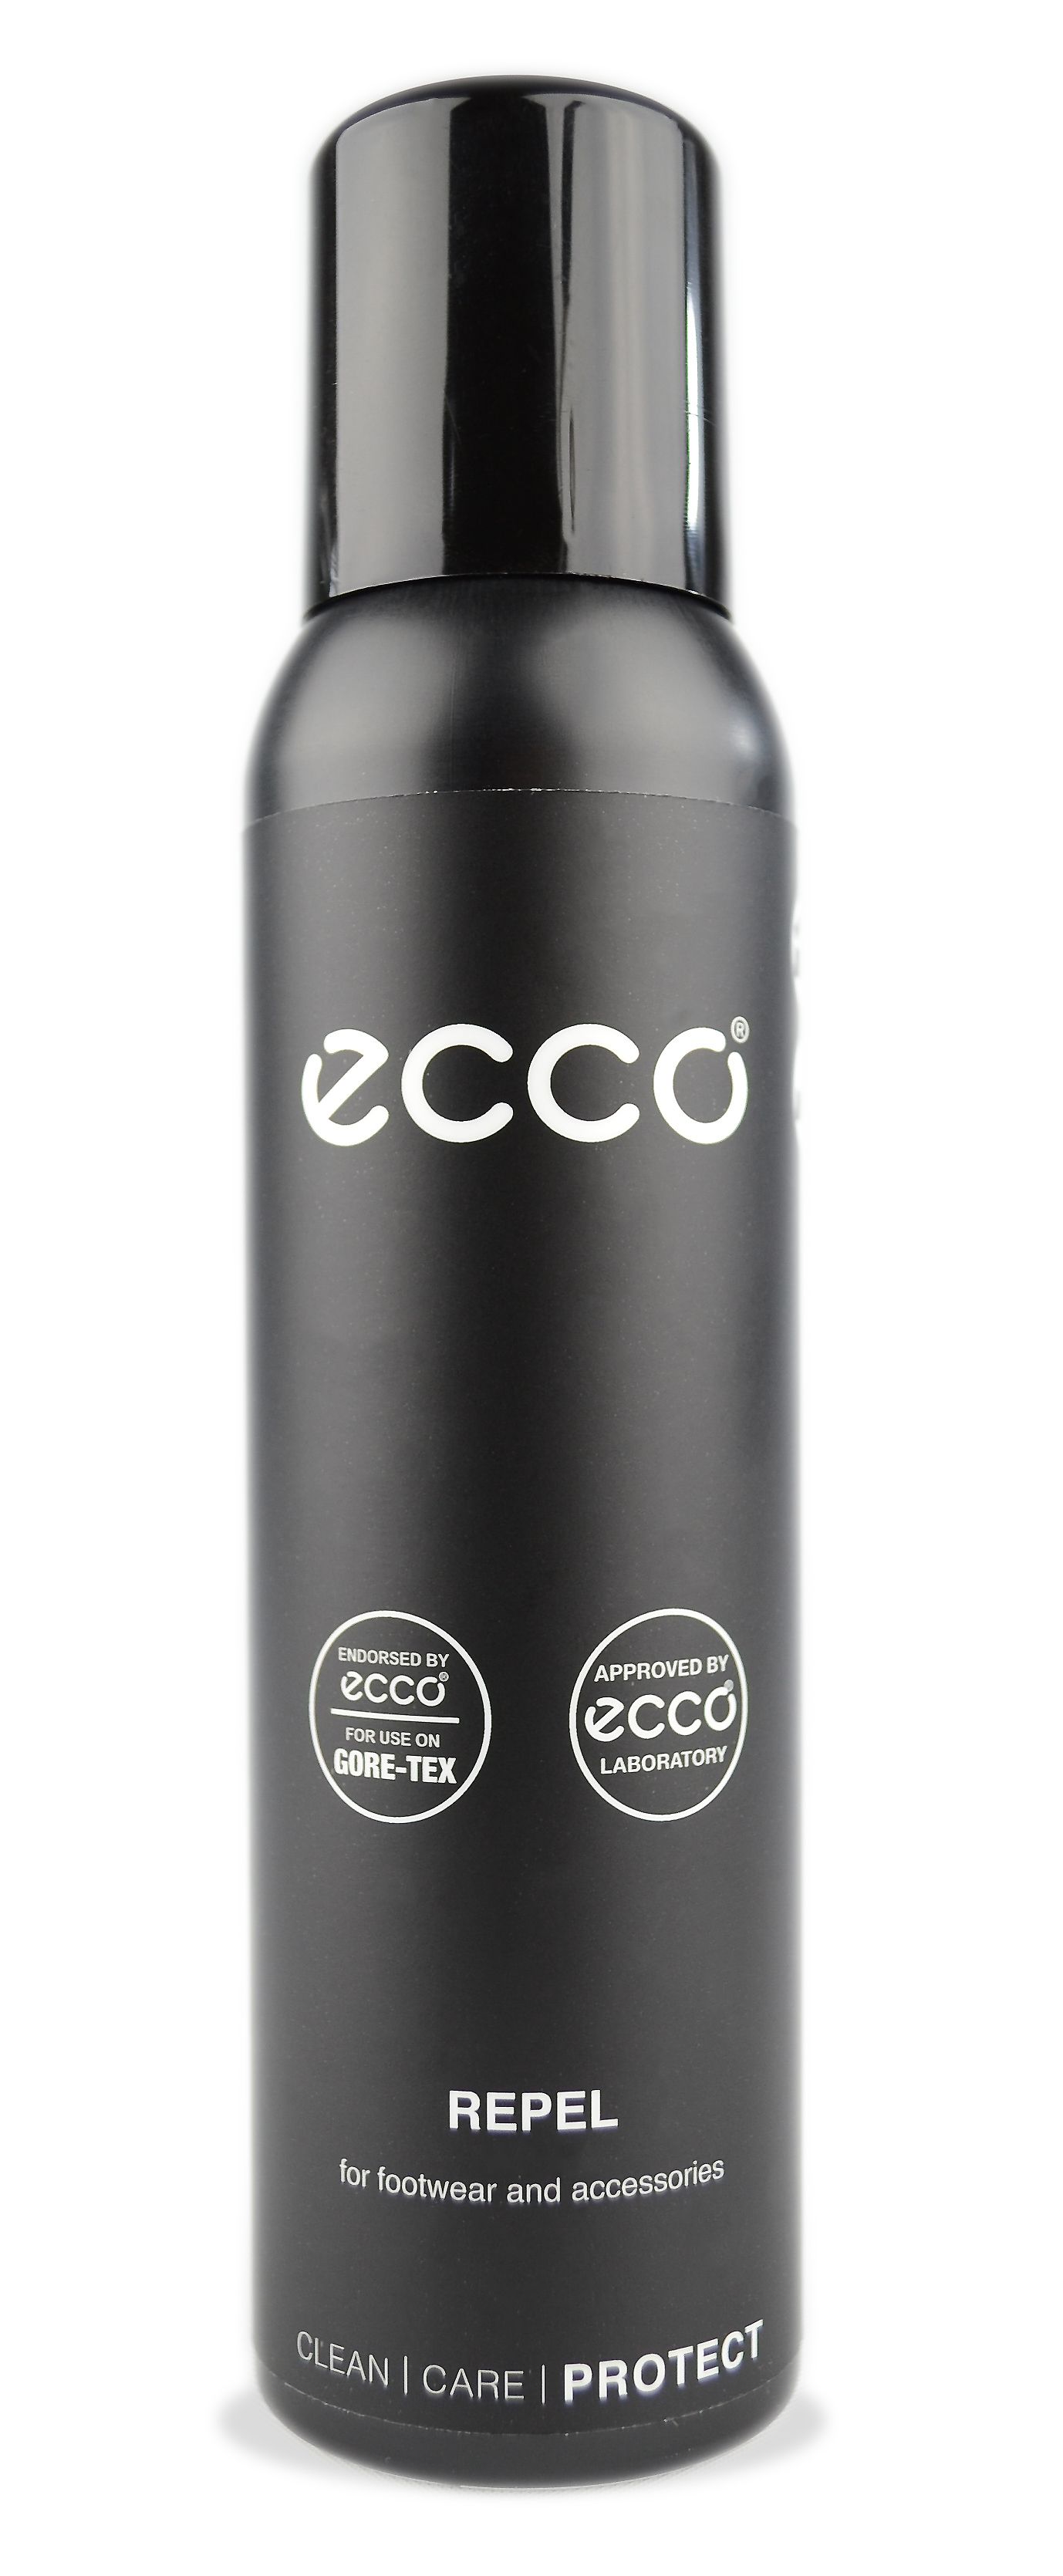 Repel - ECCO.com